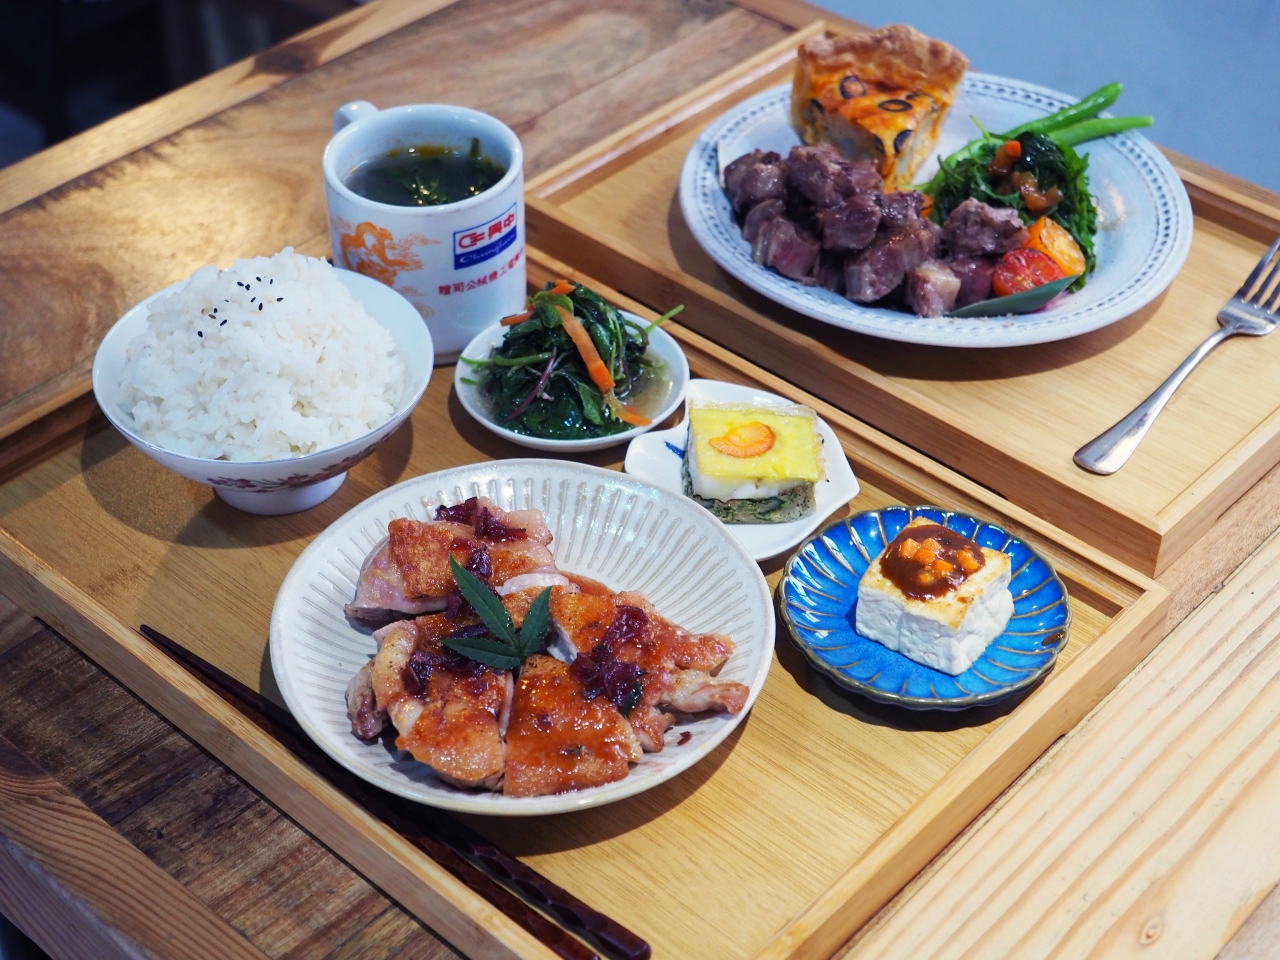 台東市美食｜橋Chiao，擁有大院子的老宅餐廳  自家栽種稻米結合台東在地食材 @台客和文青的宜居生活𖤣𖤥𖠿𖤥𖤣